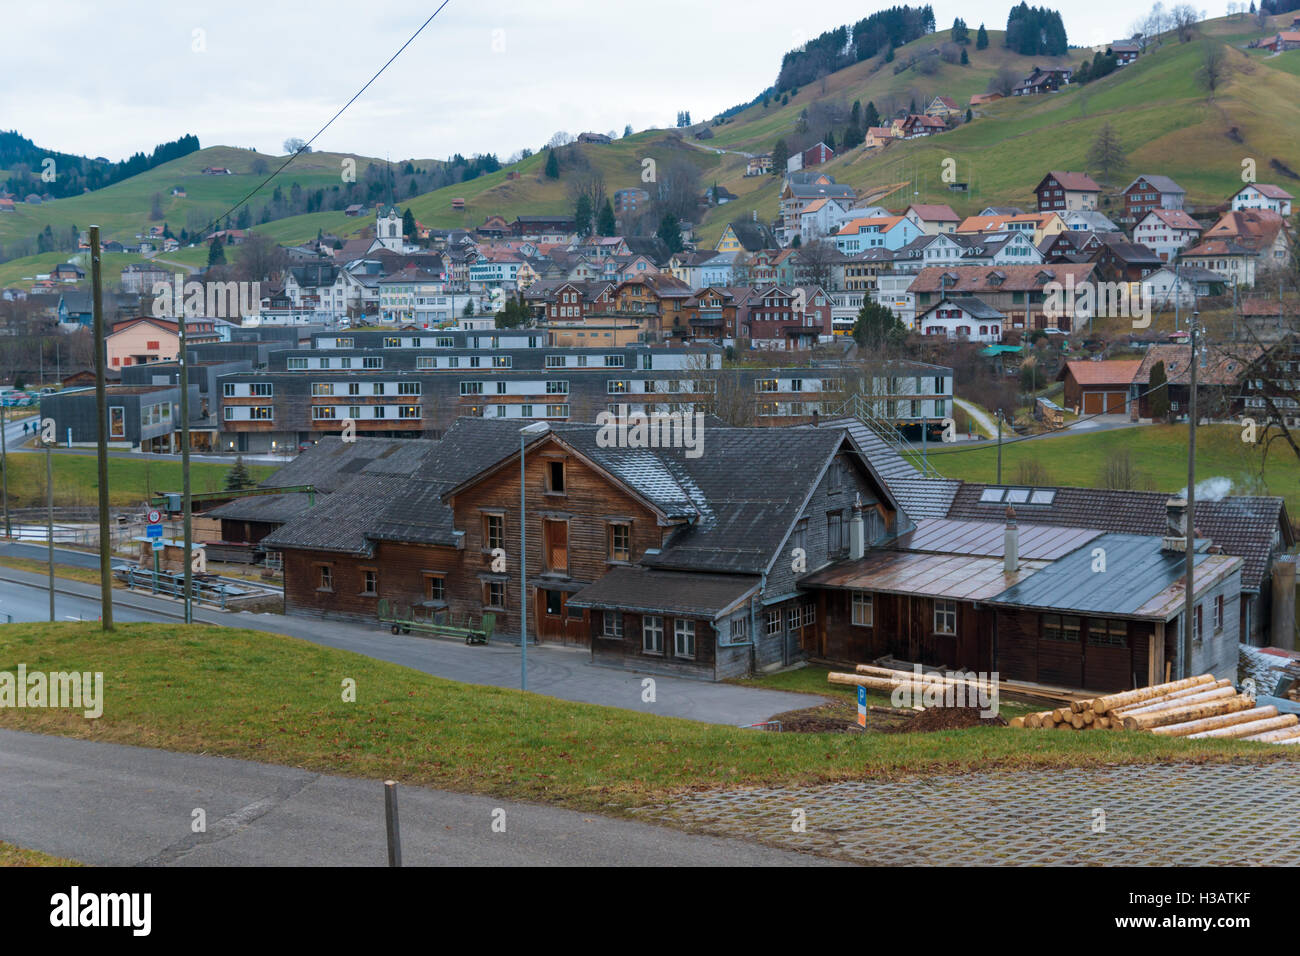 URNASCH, SWITZERLAND - DECEMBER 31, 2015: View of the village of Urnasch, in Appenzell Ausserrhoden canton, Switzerland Stock Photo